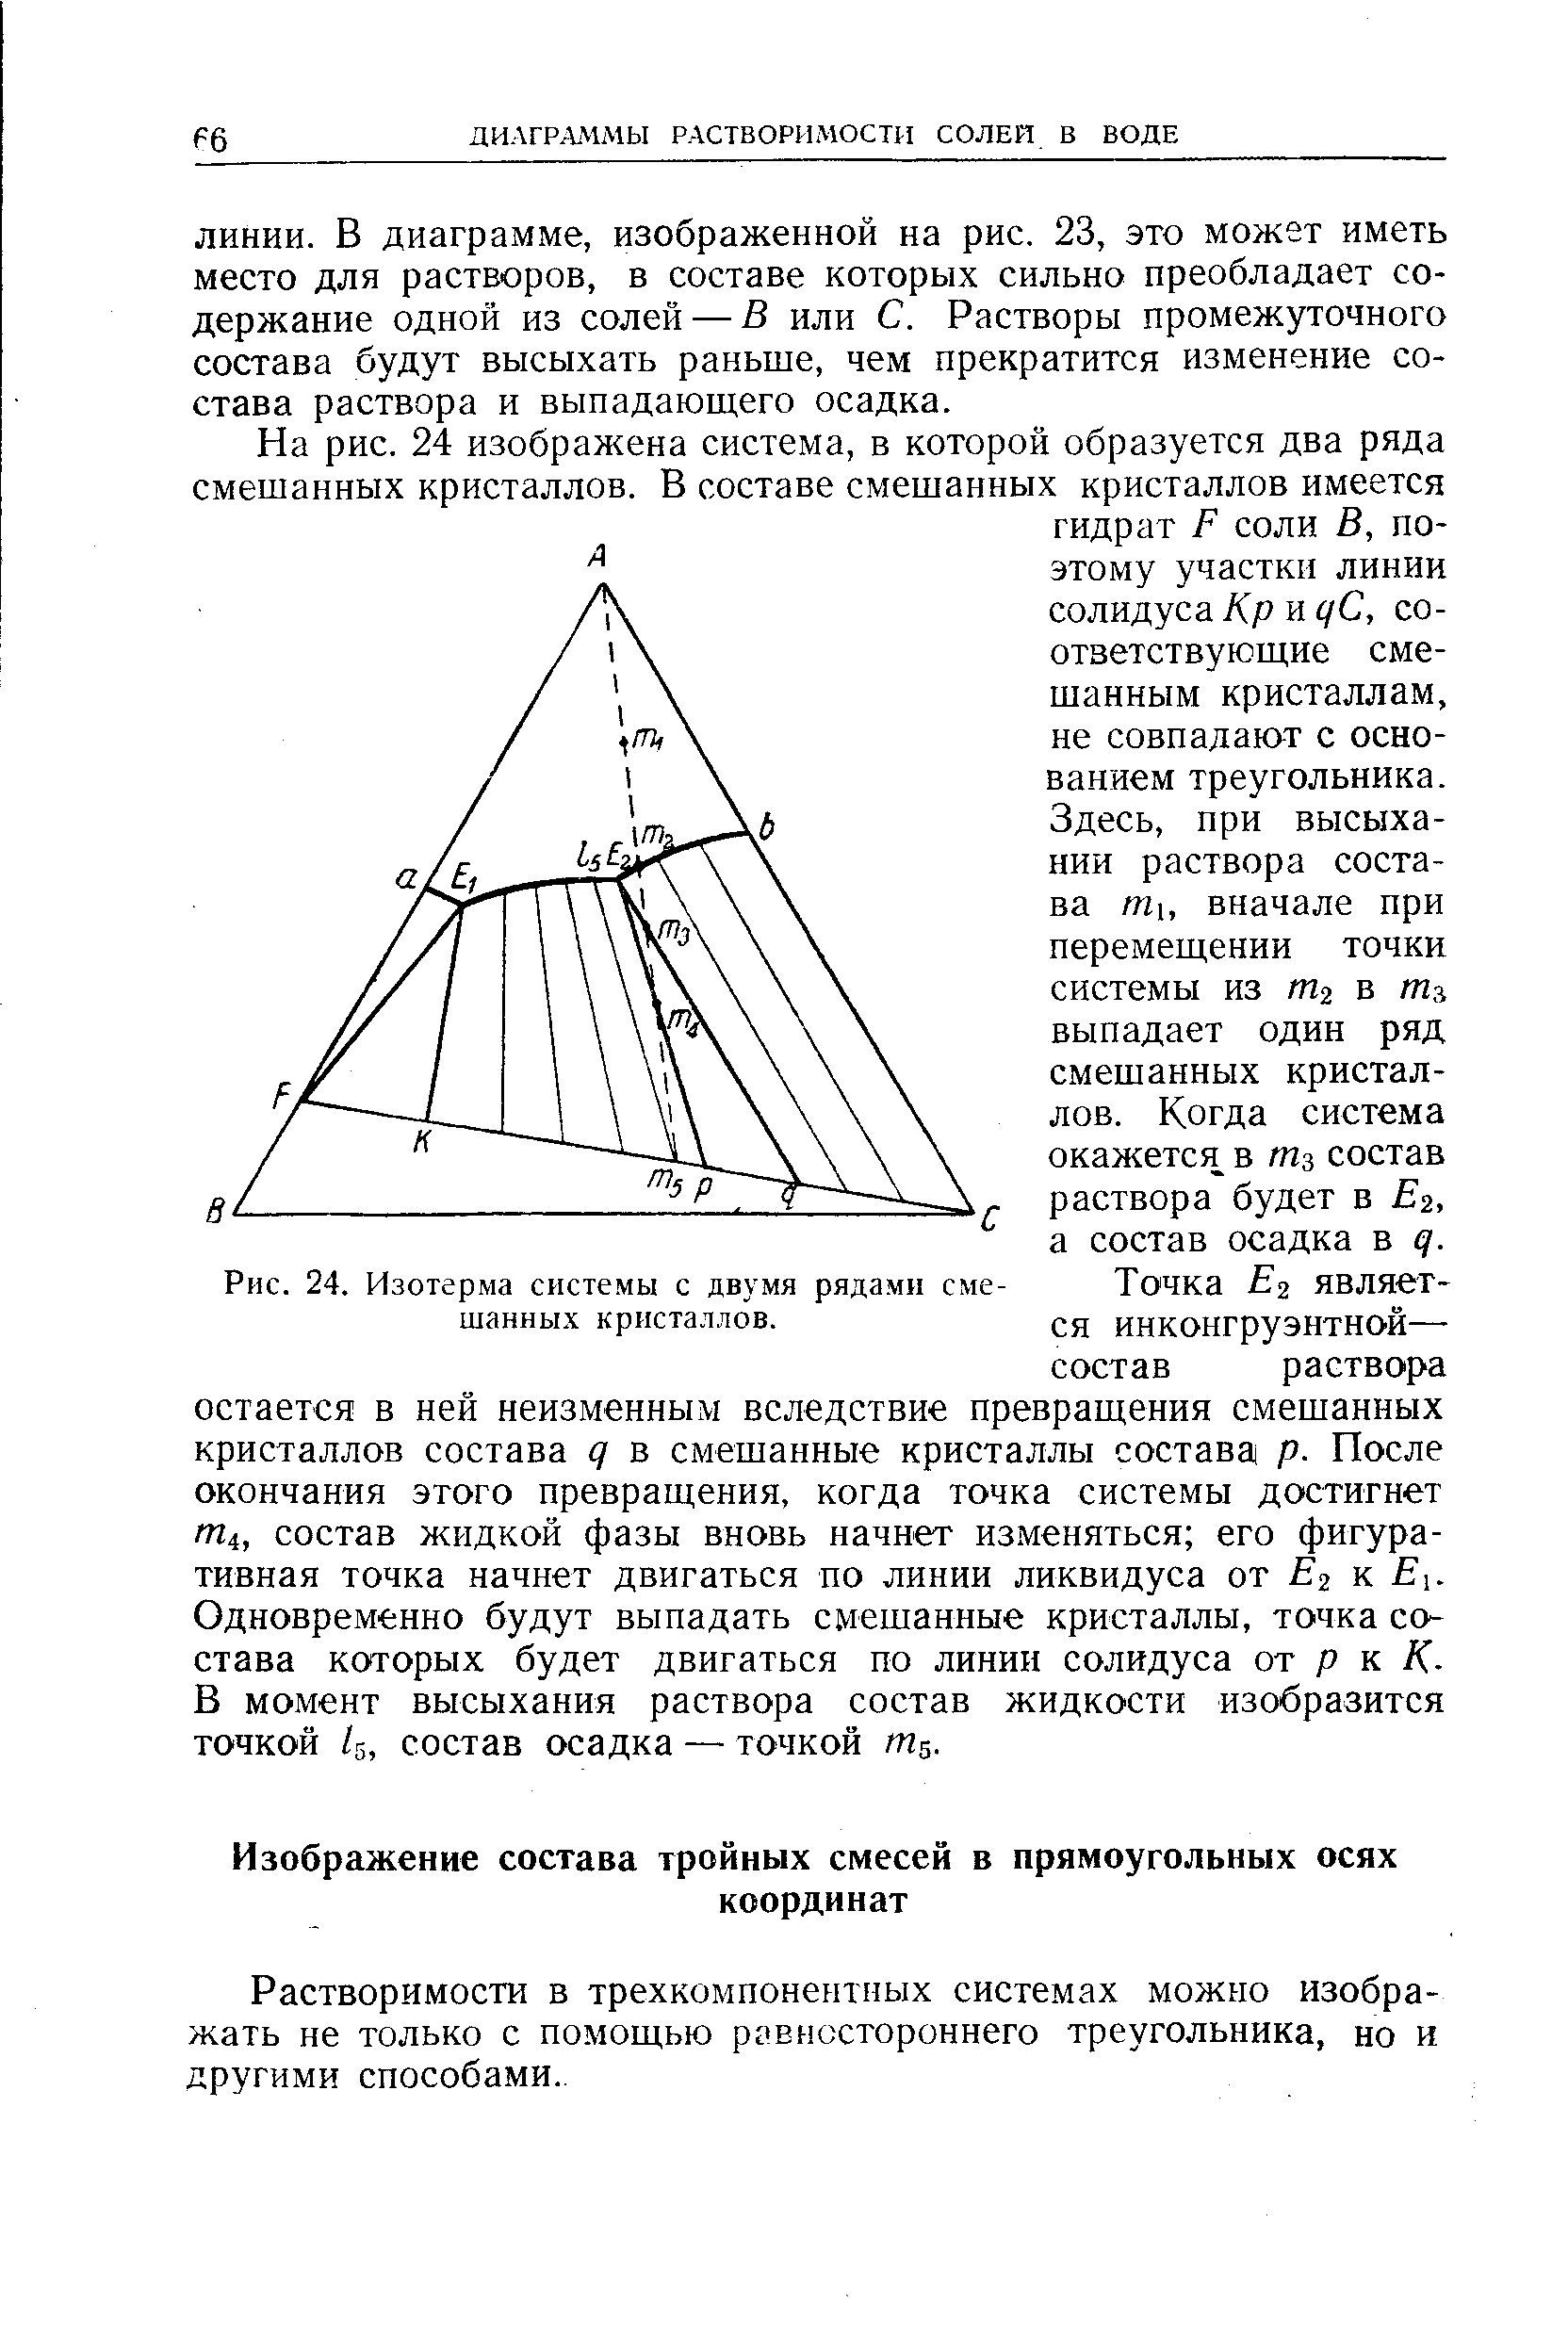 Растворимости в трехкомпонентных системах можно изображать не только с помощью рзвнсстороннего треугольника, но и другими способами.